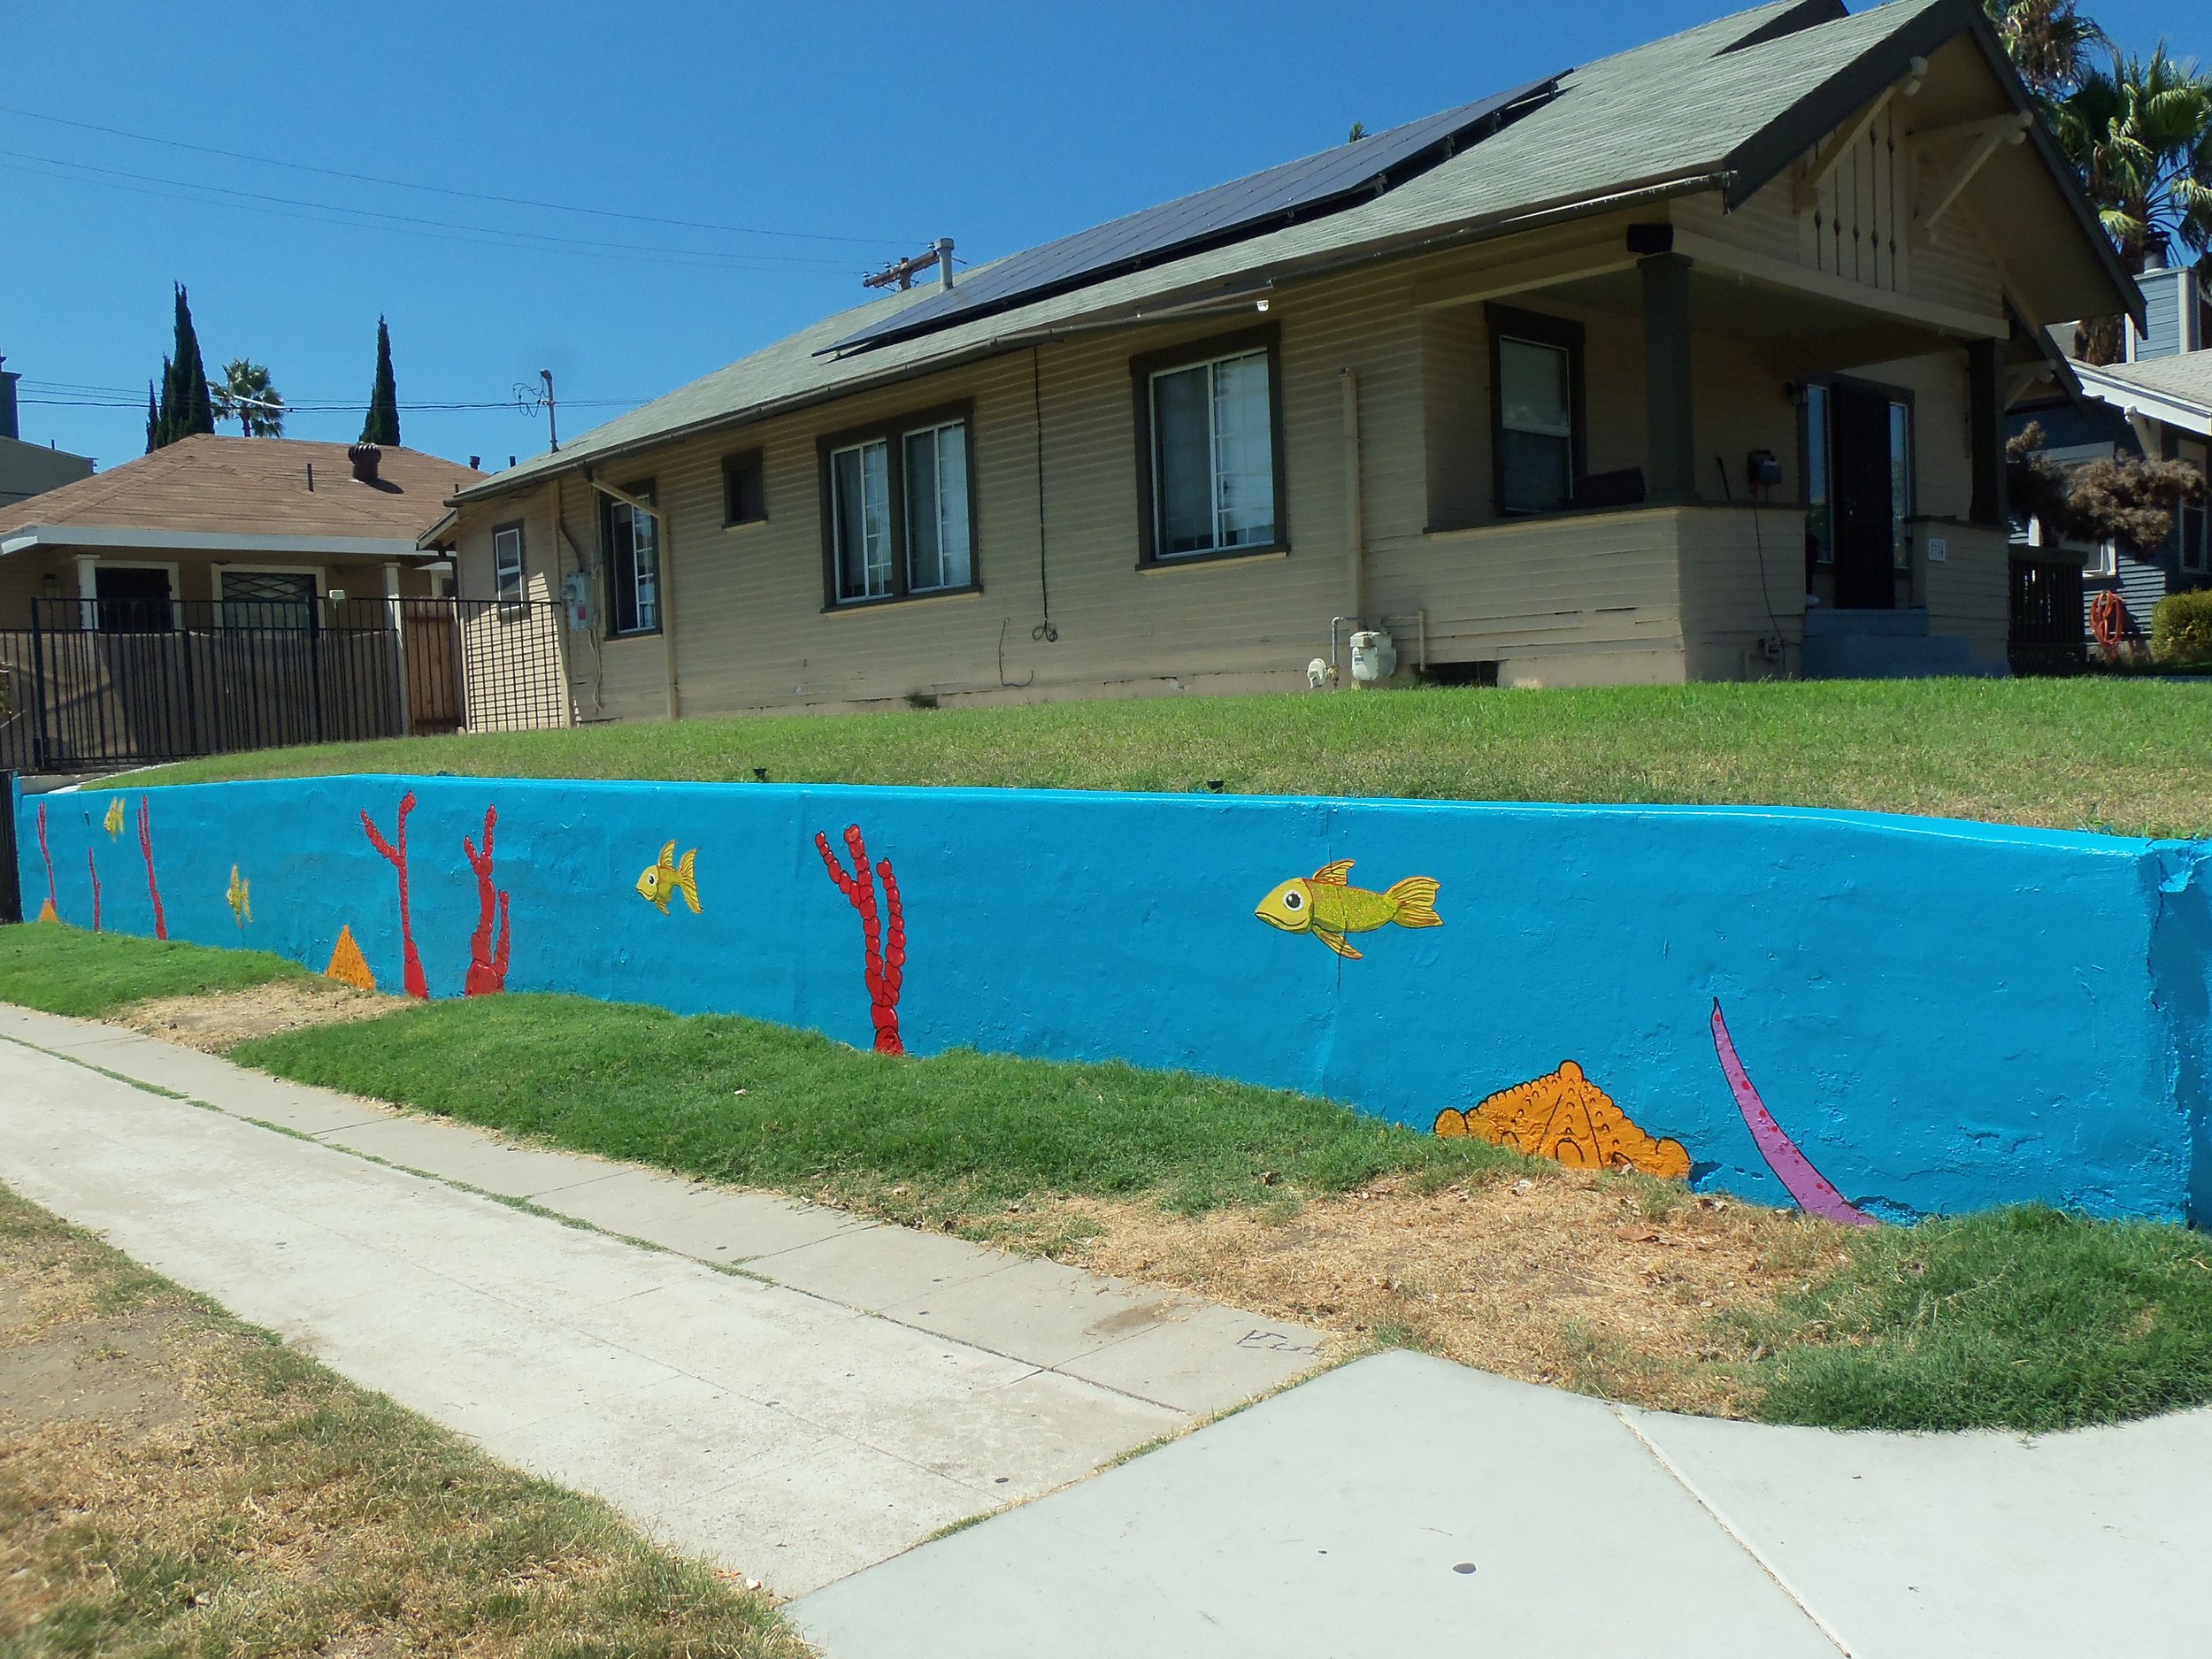 San-Diego-mural-gonza-fish-2015-julio-gonzalez-6.JPG